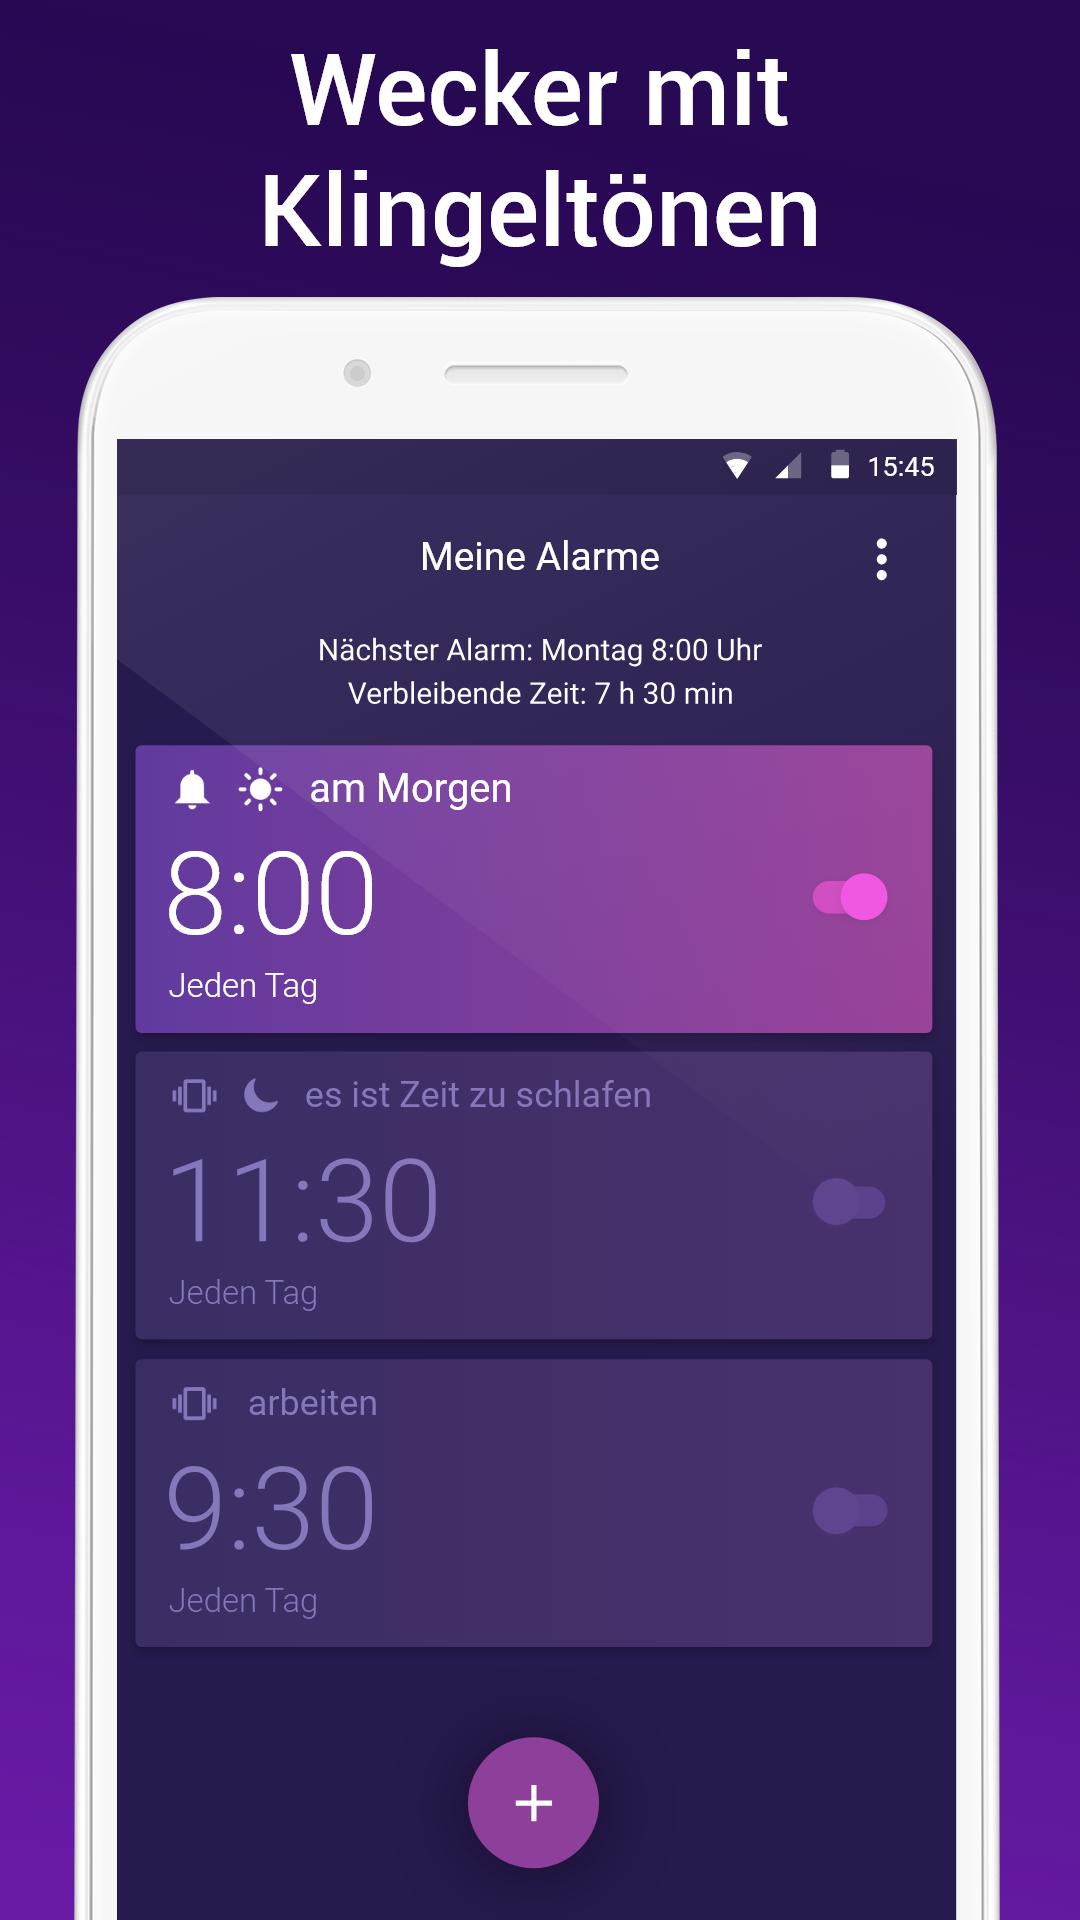 Wecker app mit musik - Alarm Clock für Android - APK herunterladen